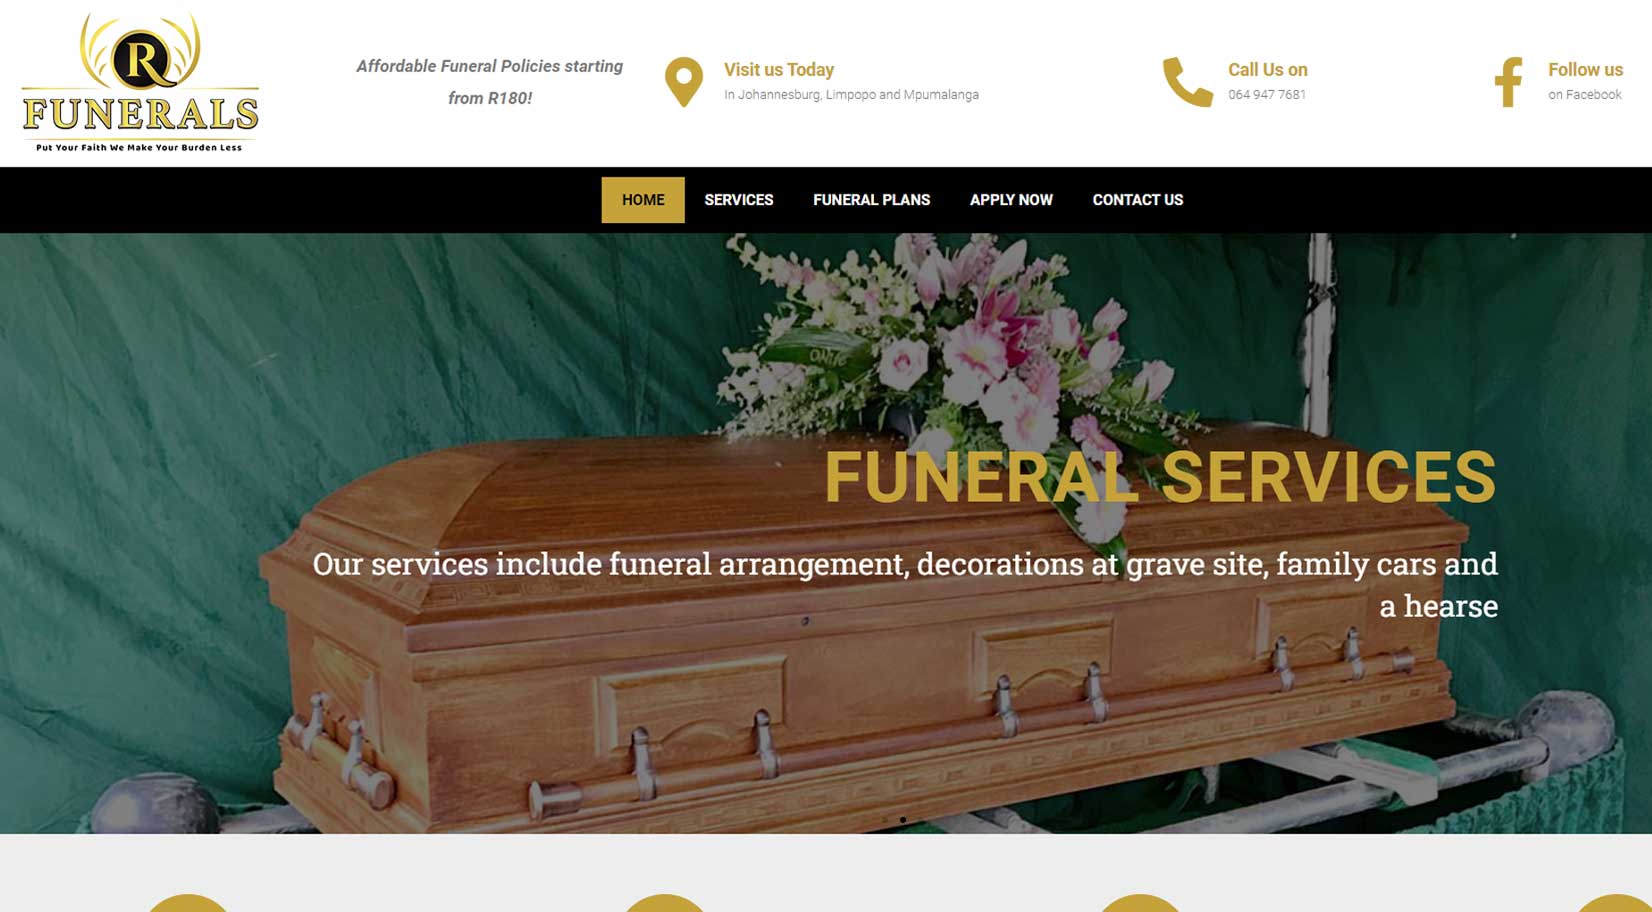 R Funerals